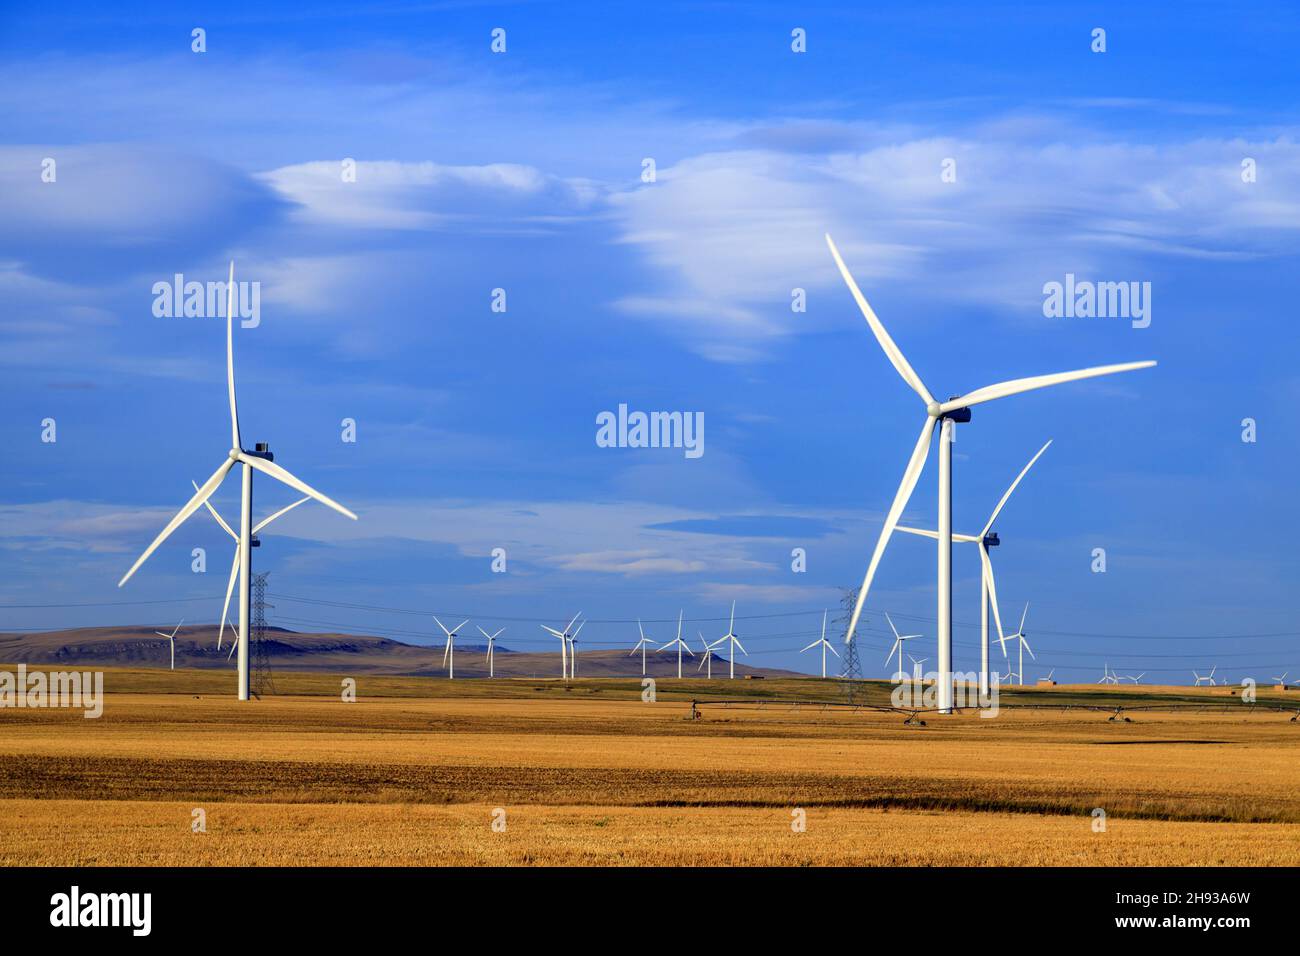 L'energia eolica o eolica è l'uso di turbine eoliche per generare elettricità. L'energia eolica è una fonte energetica popolare, sostenibile e rinnovabile. Foto Stock